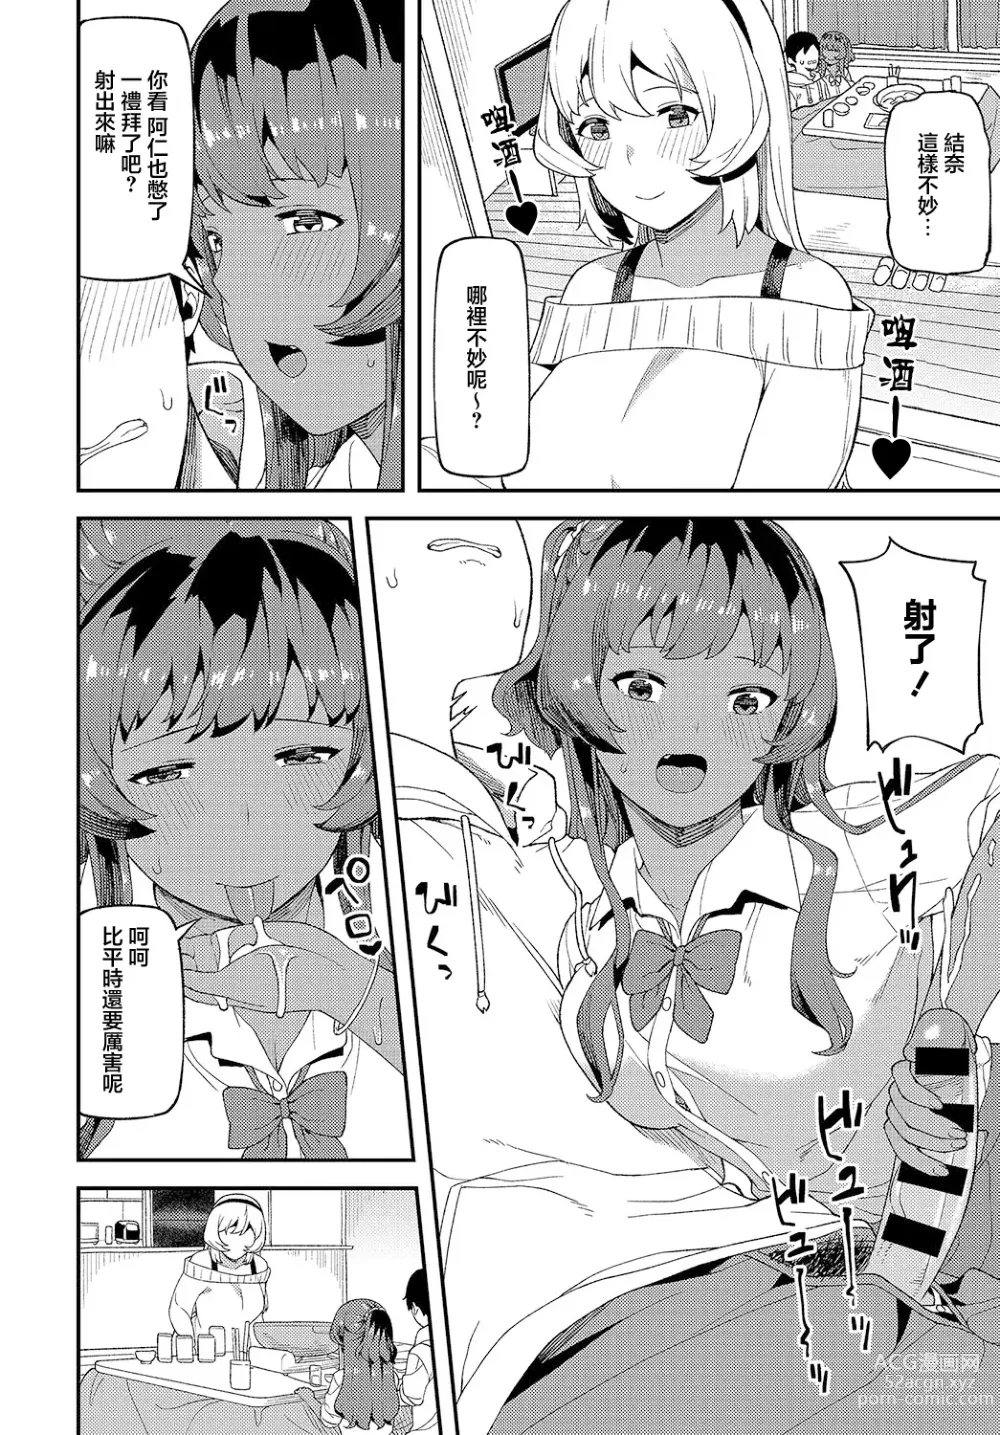 Page 7 of manga Shinkinkyori Renai